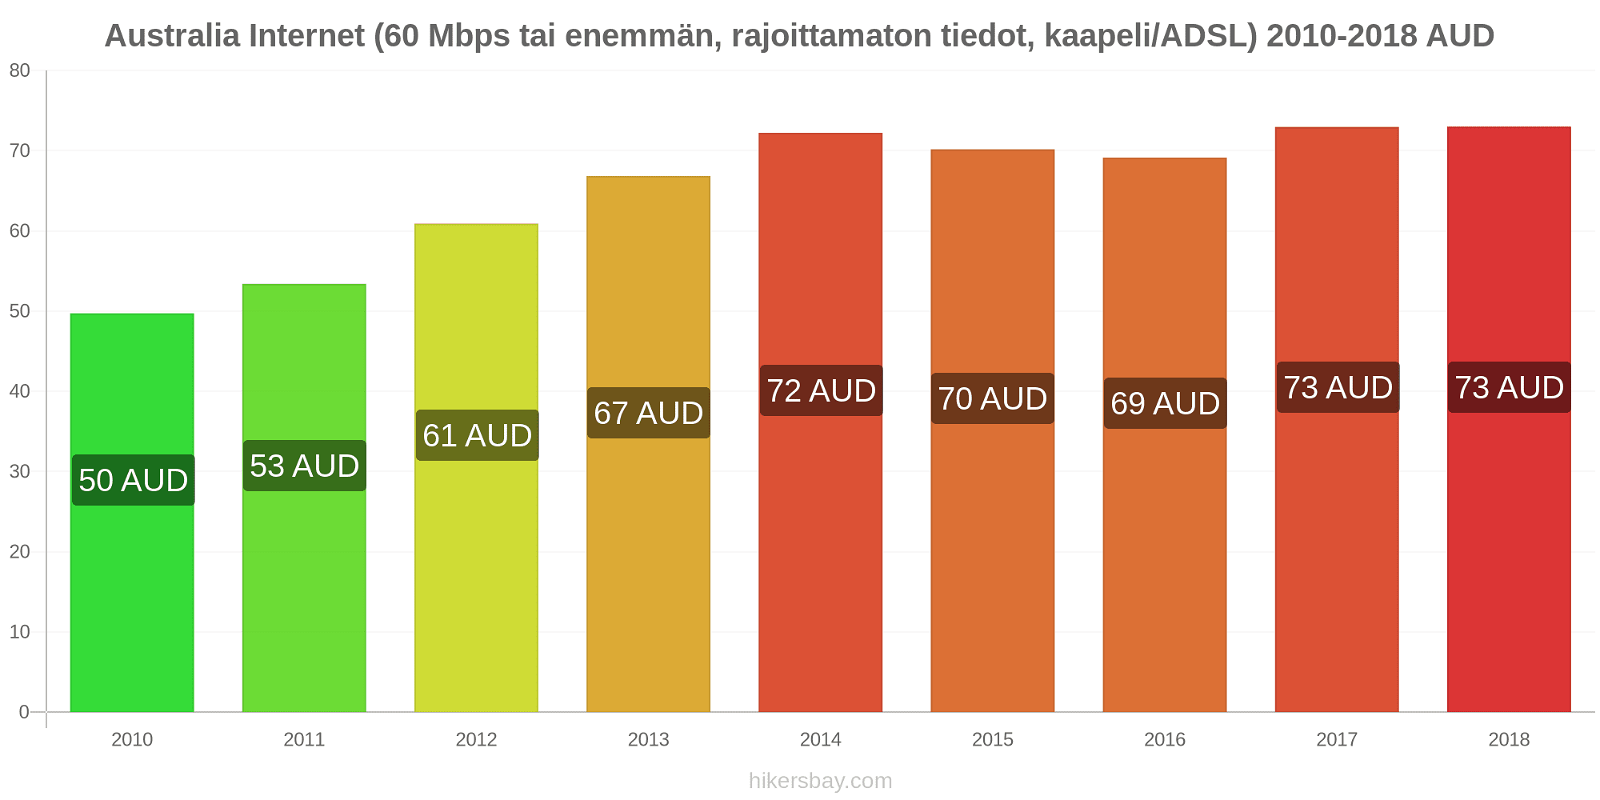 Australia hintojen muutokset Internet (60 Mbps tai enemmän, rajoittamaton tiedot, kaapeli/ADSL) hikersbay.com